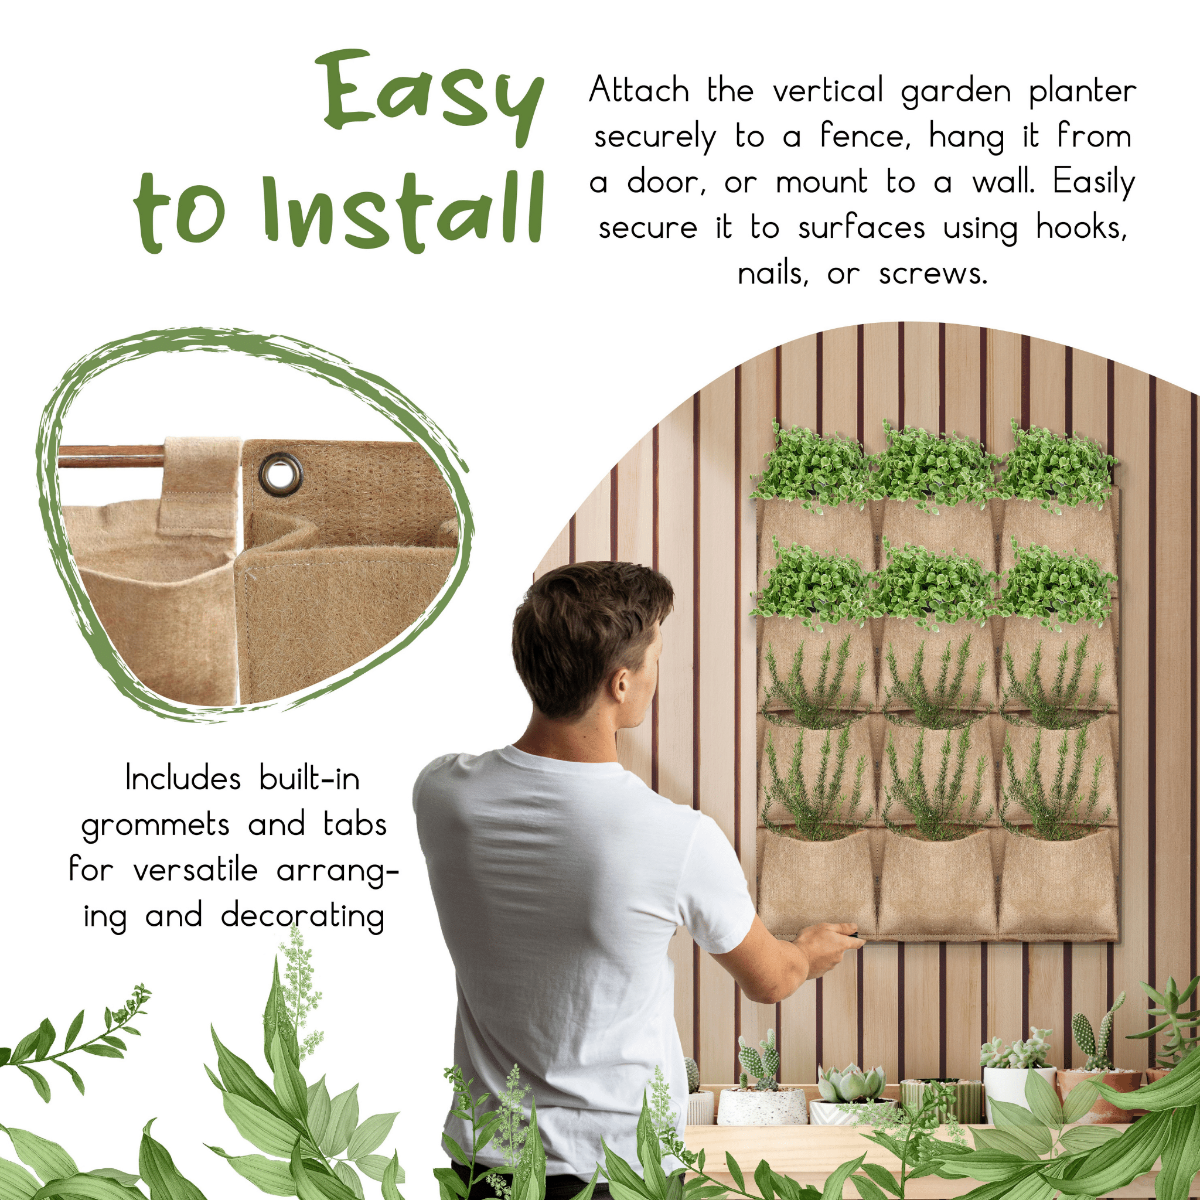 pocket garden instructions